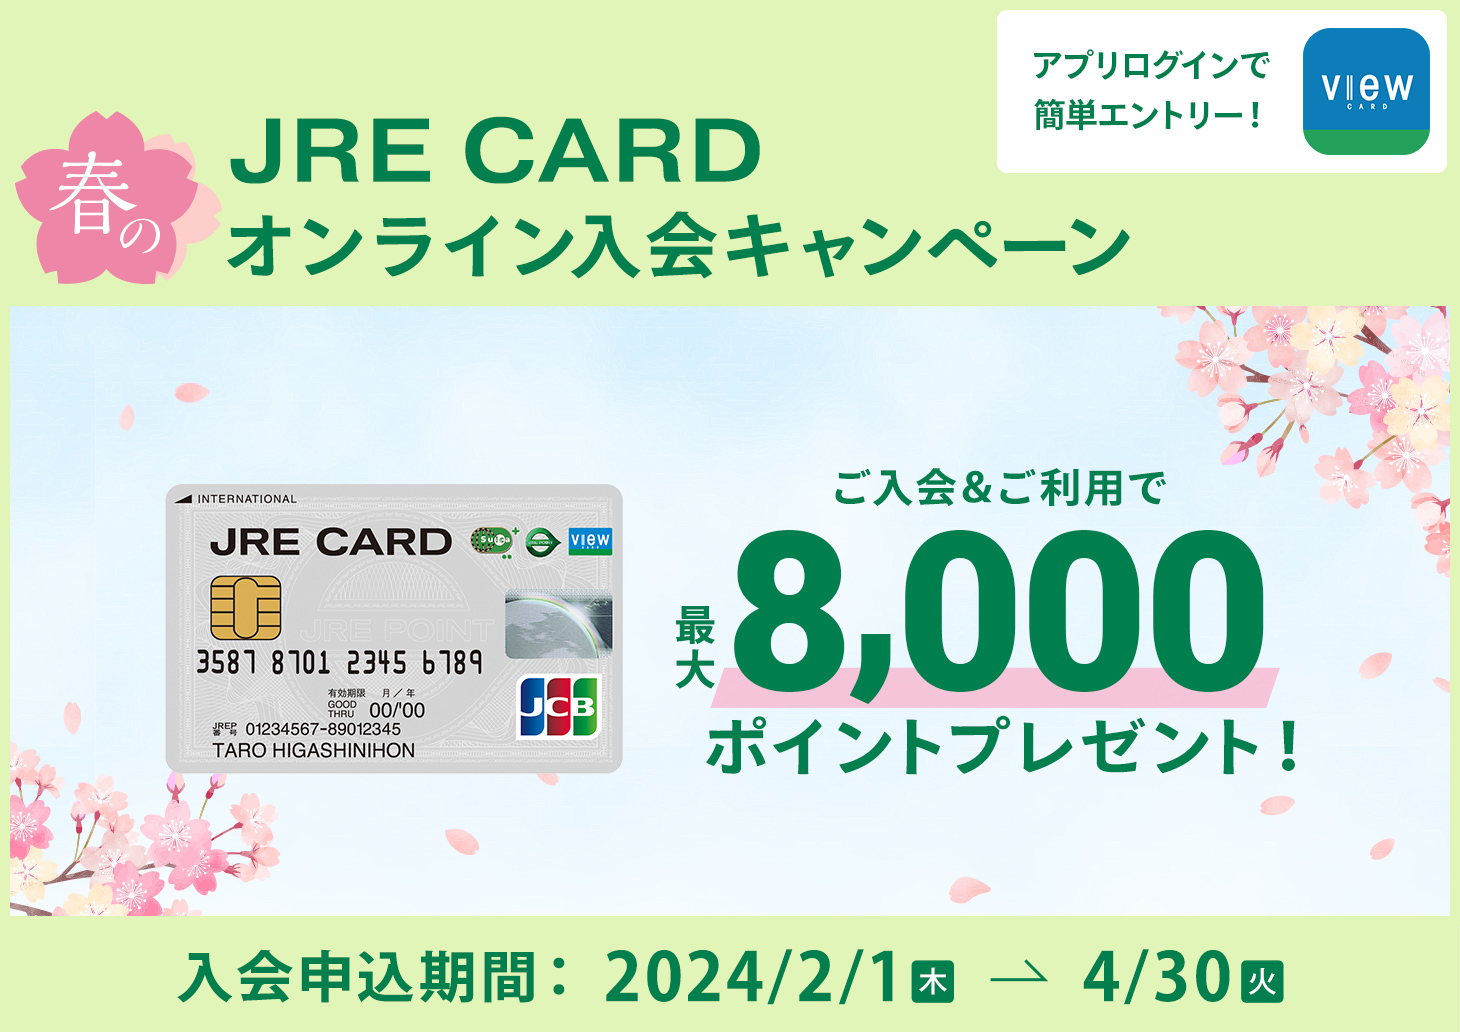 JRE CARD 春のオンライン入会キャンペーン